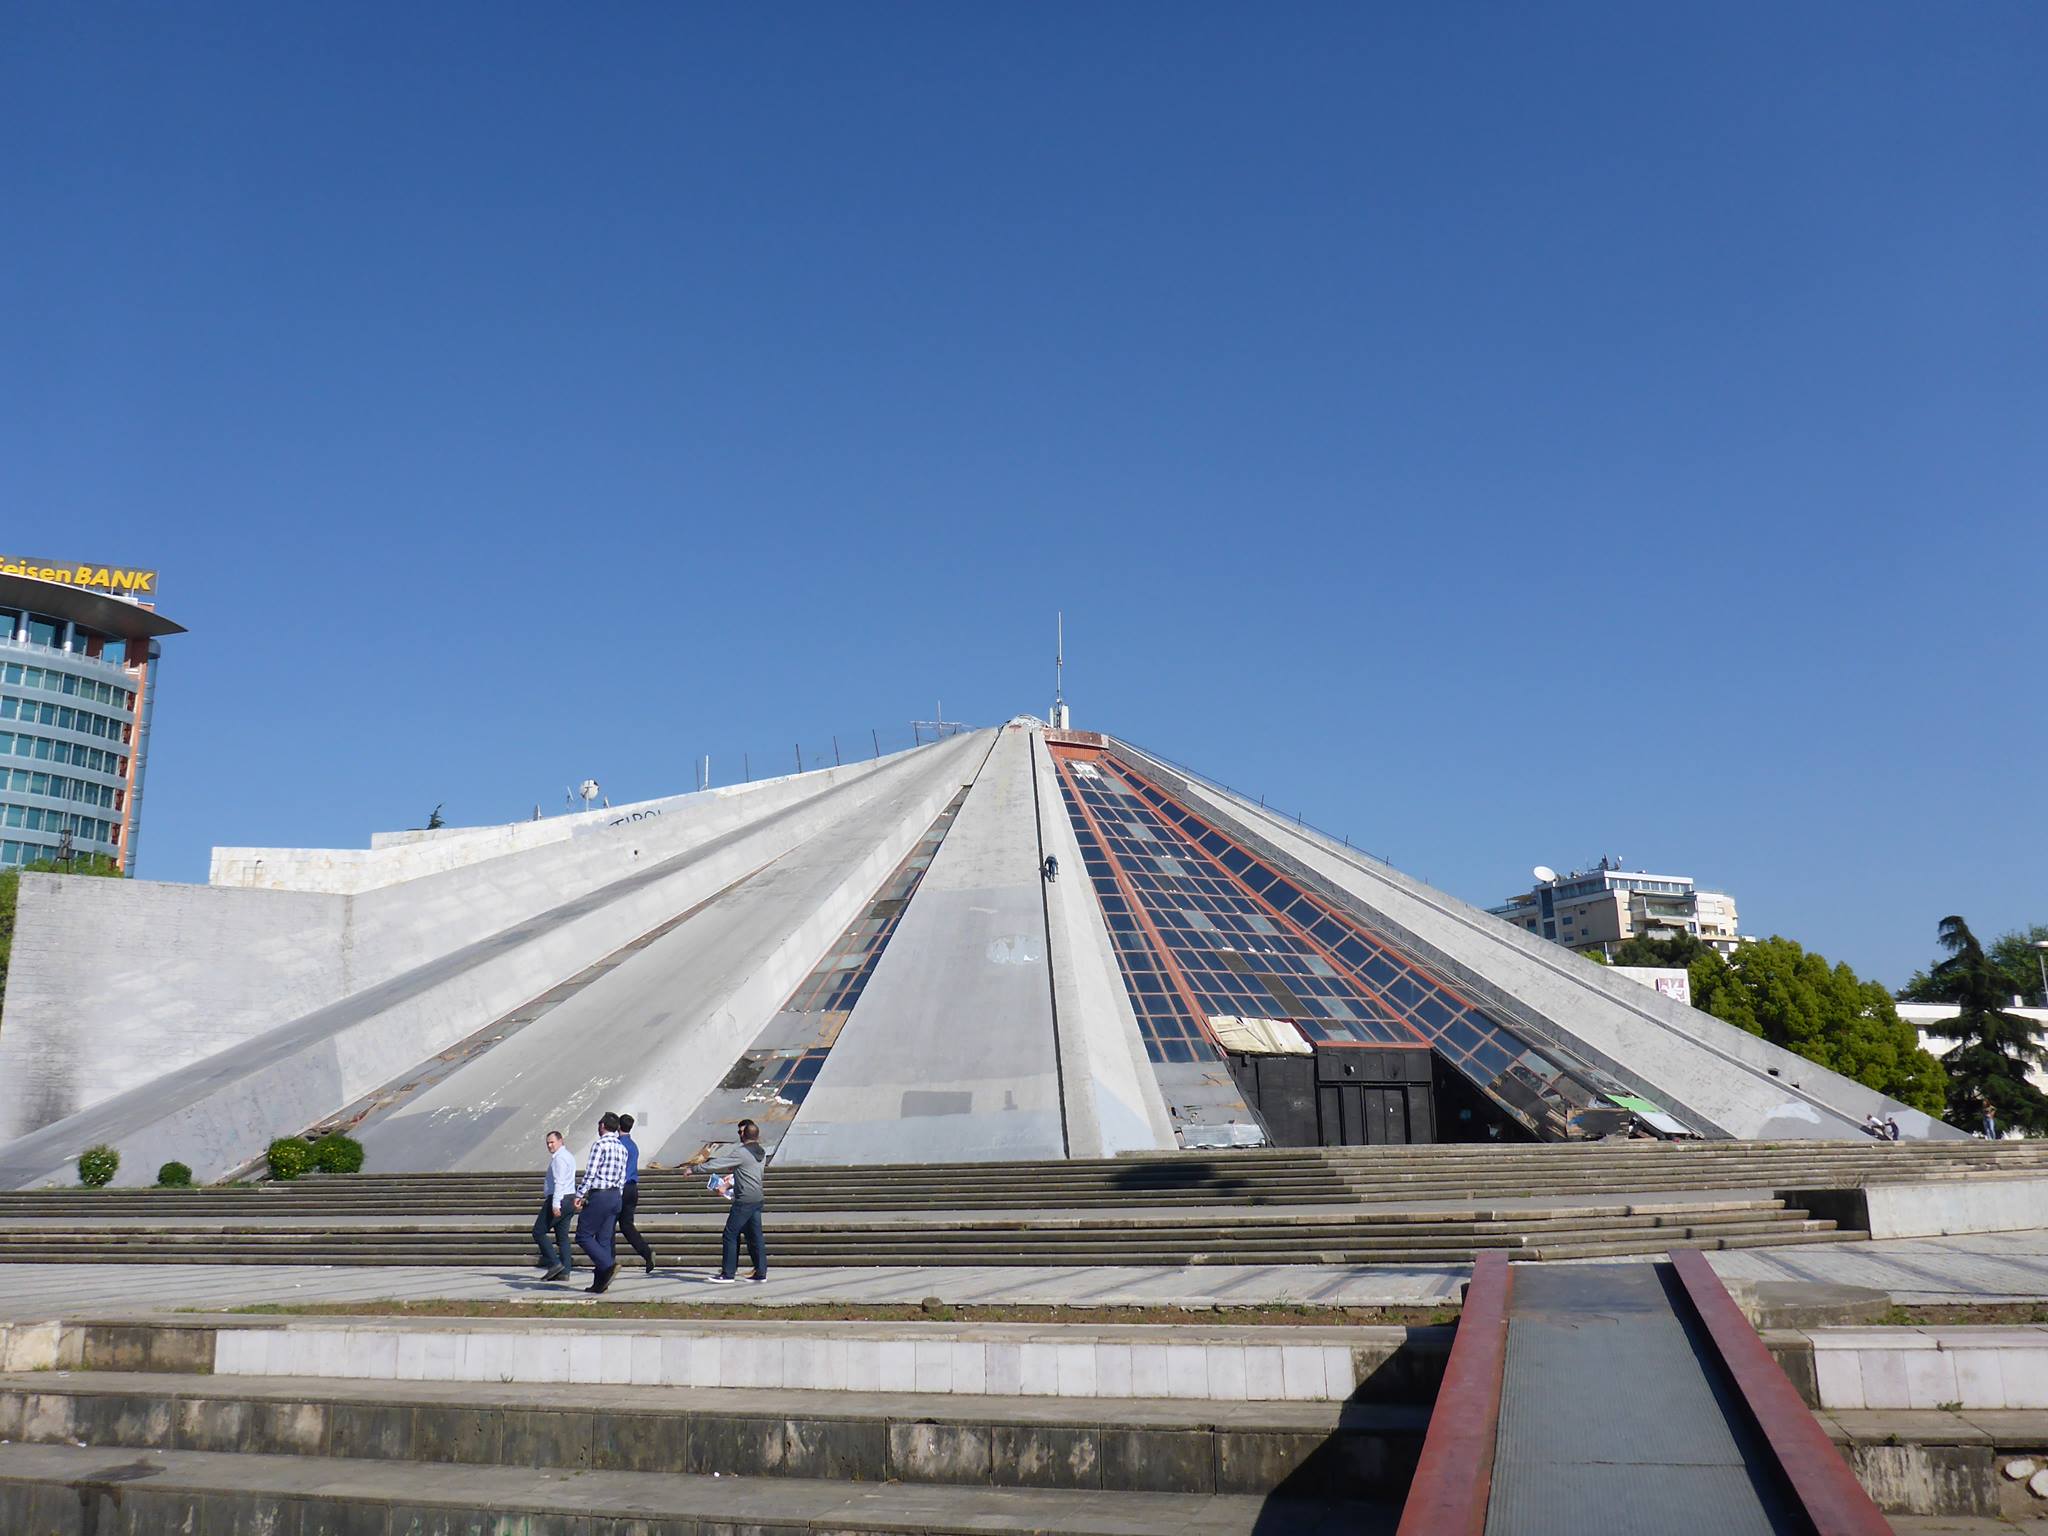 La pyramide de Tirana, anciennement un musée à la mémoire du dictateur Enver Hoxha et laissée à l'abandon depuis